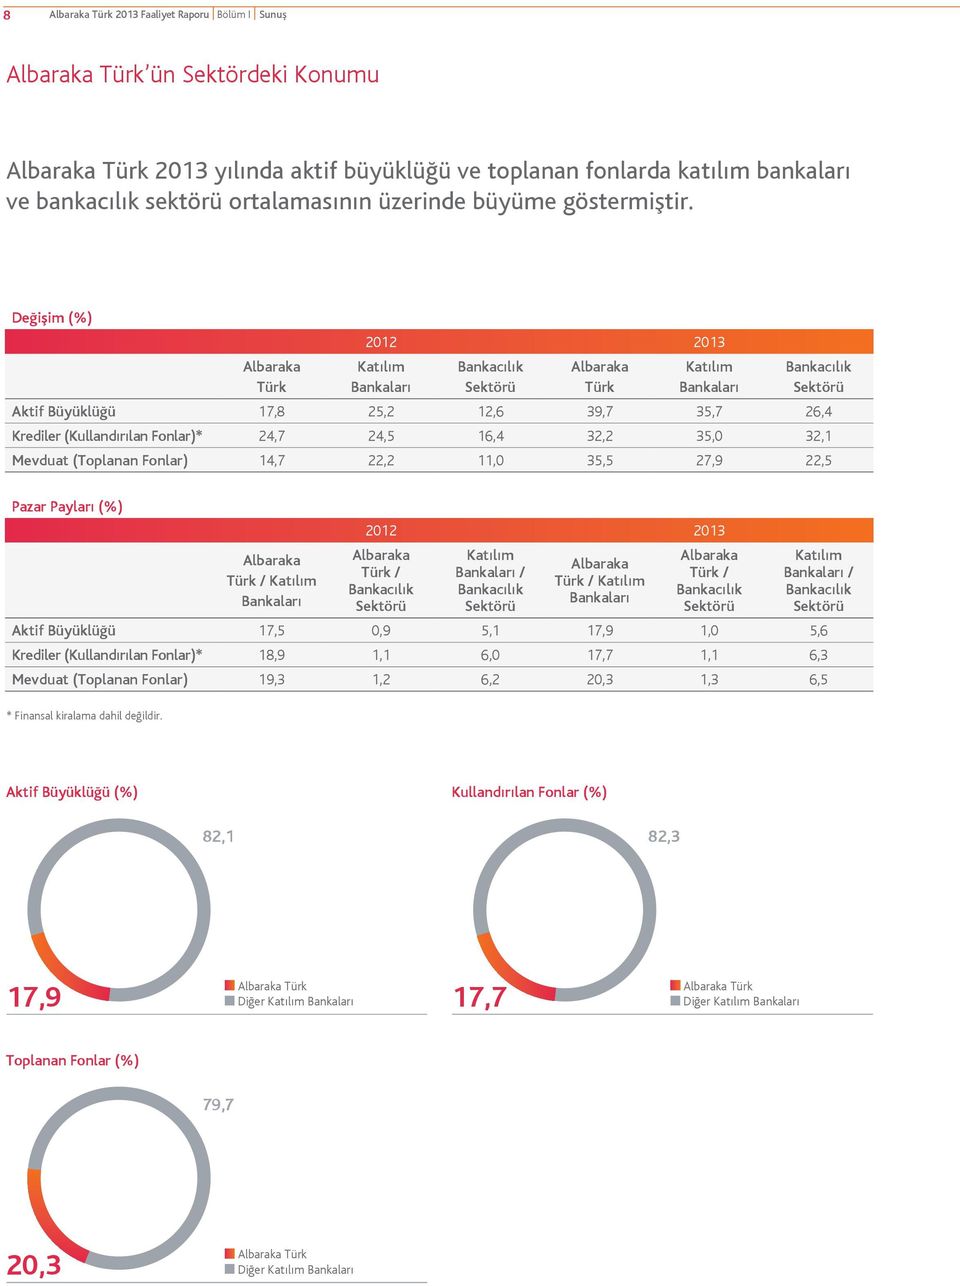 Değişim (%) Albaraka Türk 2012 2013 Katılım Bankaları Bankacılık Sektörü Albaraka Türk Katılım Bankaları Bankacılık Sektörü Aktif Büyüklüğü 17,8 25,2 12,6 39,7 35,7 26,4 Krediler (Kullandırılan